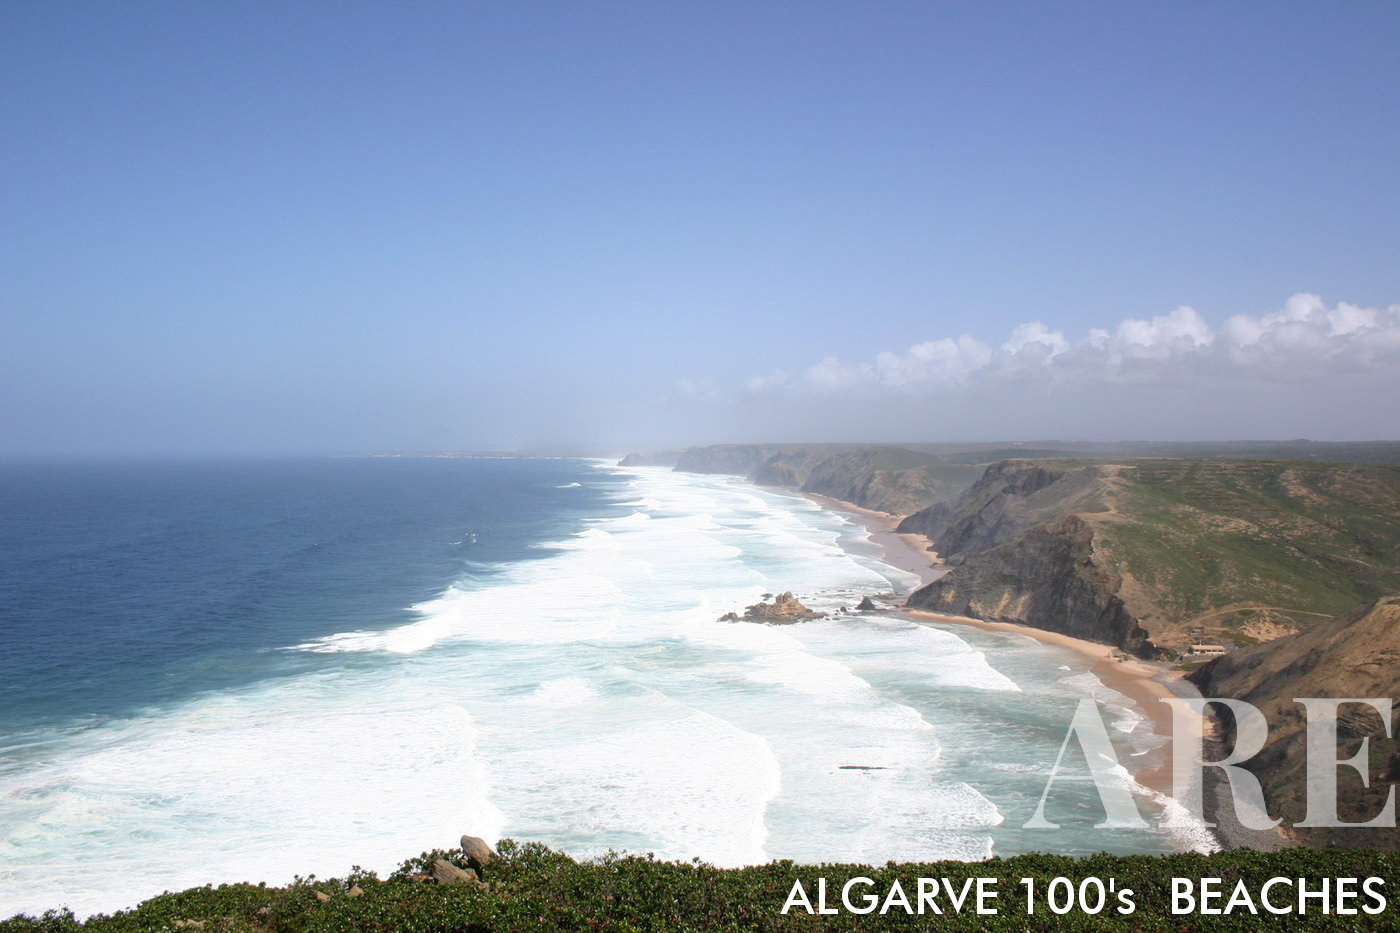 De uma perspectiva elevada, as Praias do Castelejo e da Cordoama ficam à vista, ondas brancas dominando a cena em um poderoso swell de março, uma demonstração vívida da grandeza da natureza.